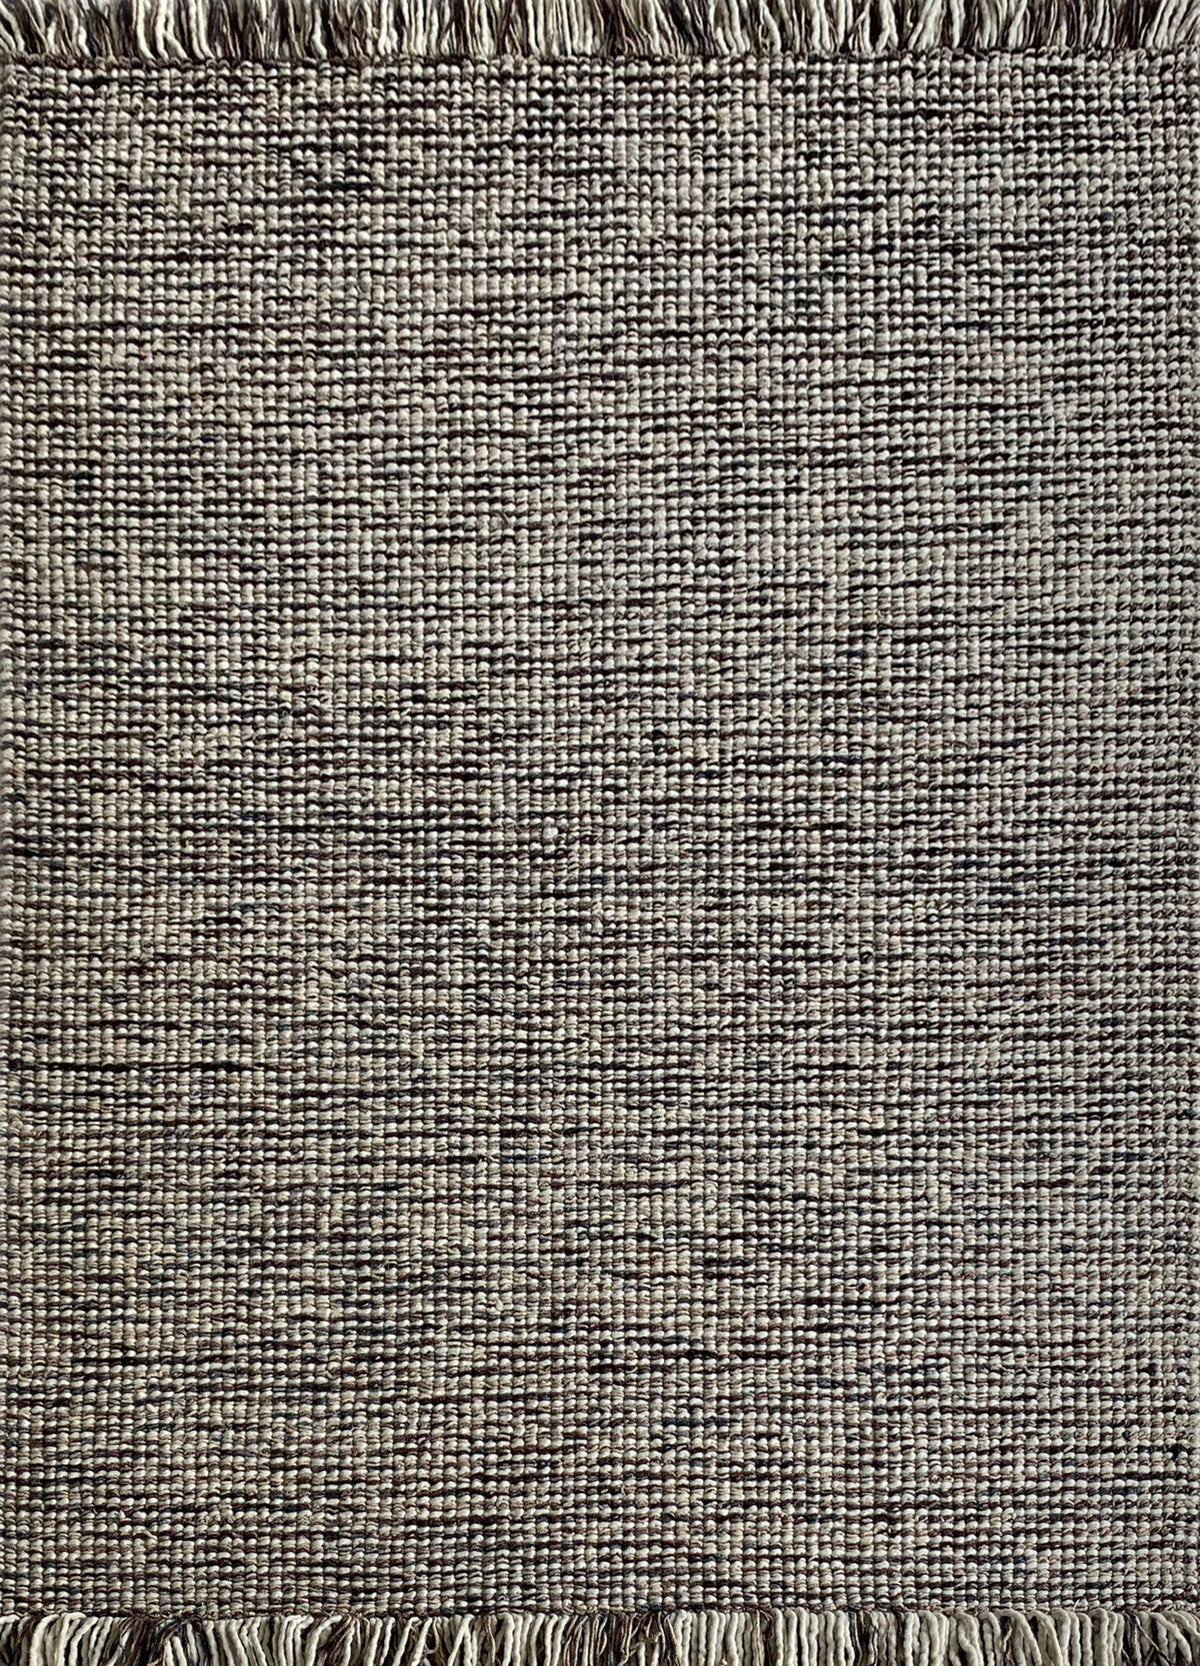 Rugslane Hand Woven Multi Modern Carpet 5.2ft X 7.5ft